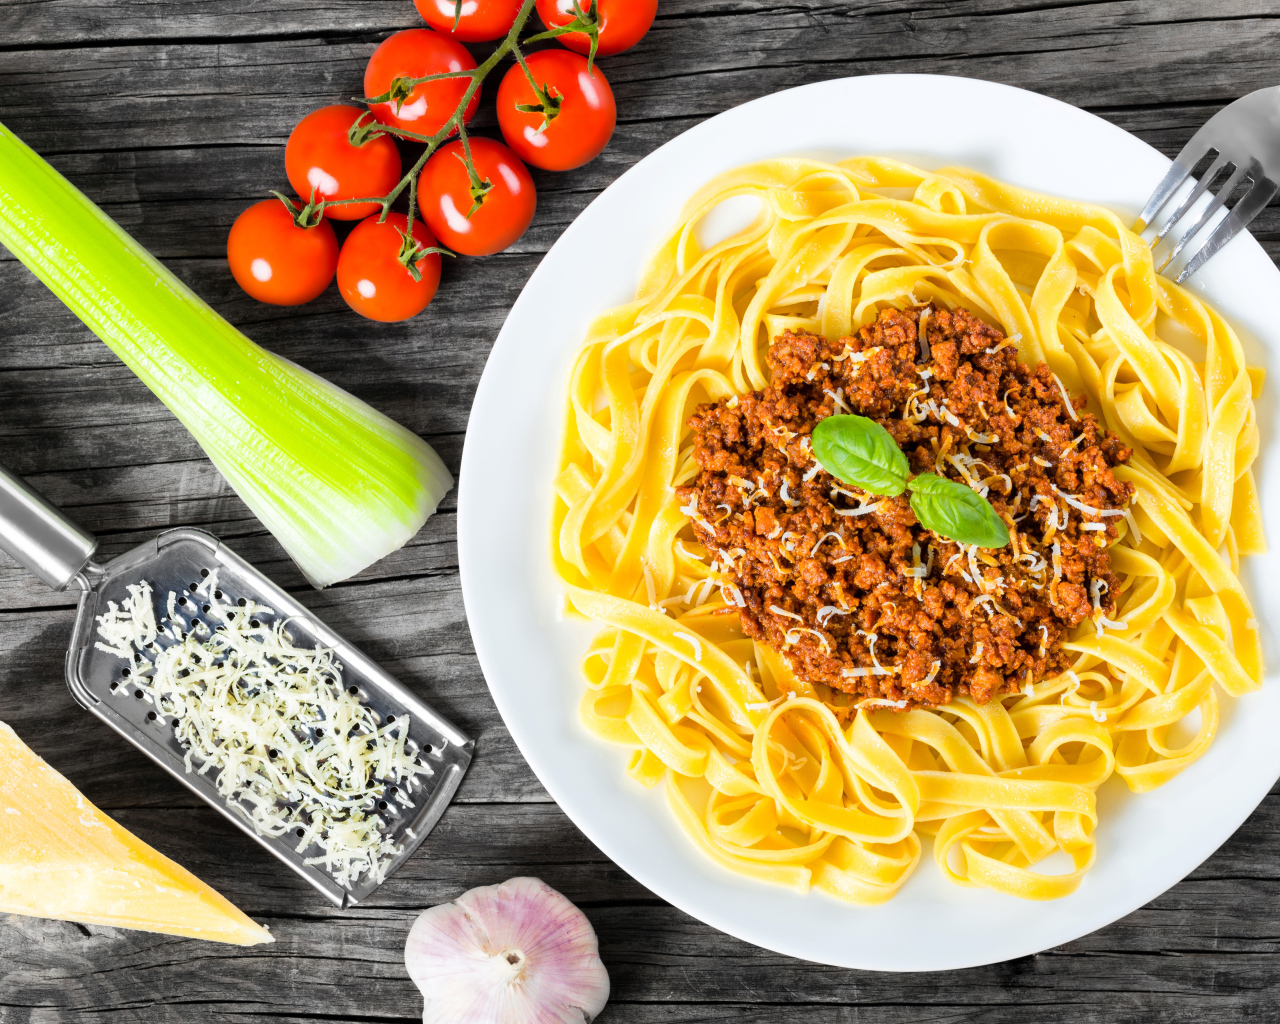 Спагетти на белой тарелке с мясом и сыром